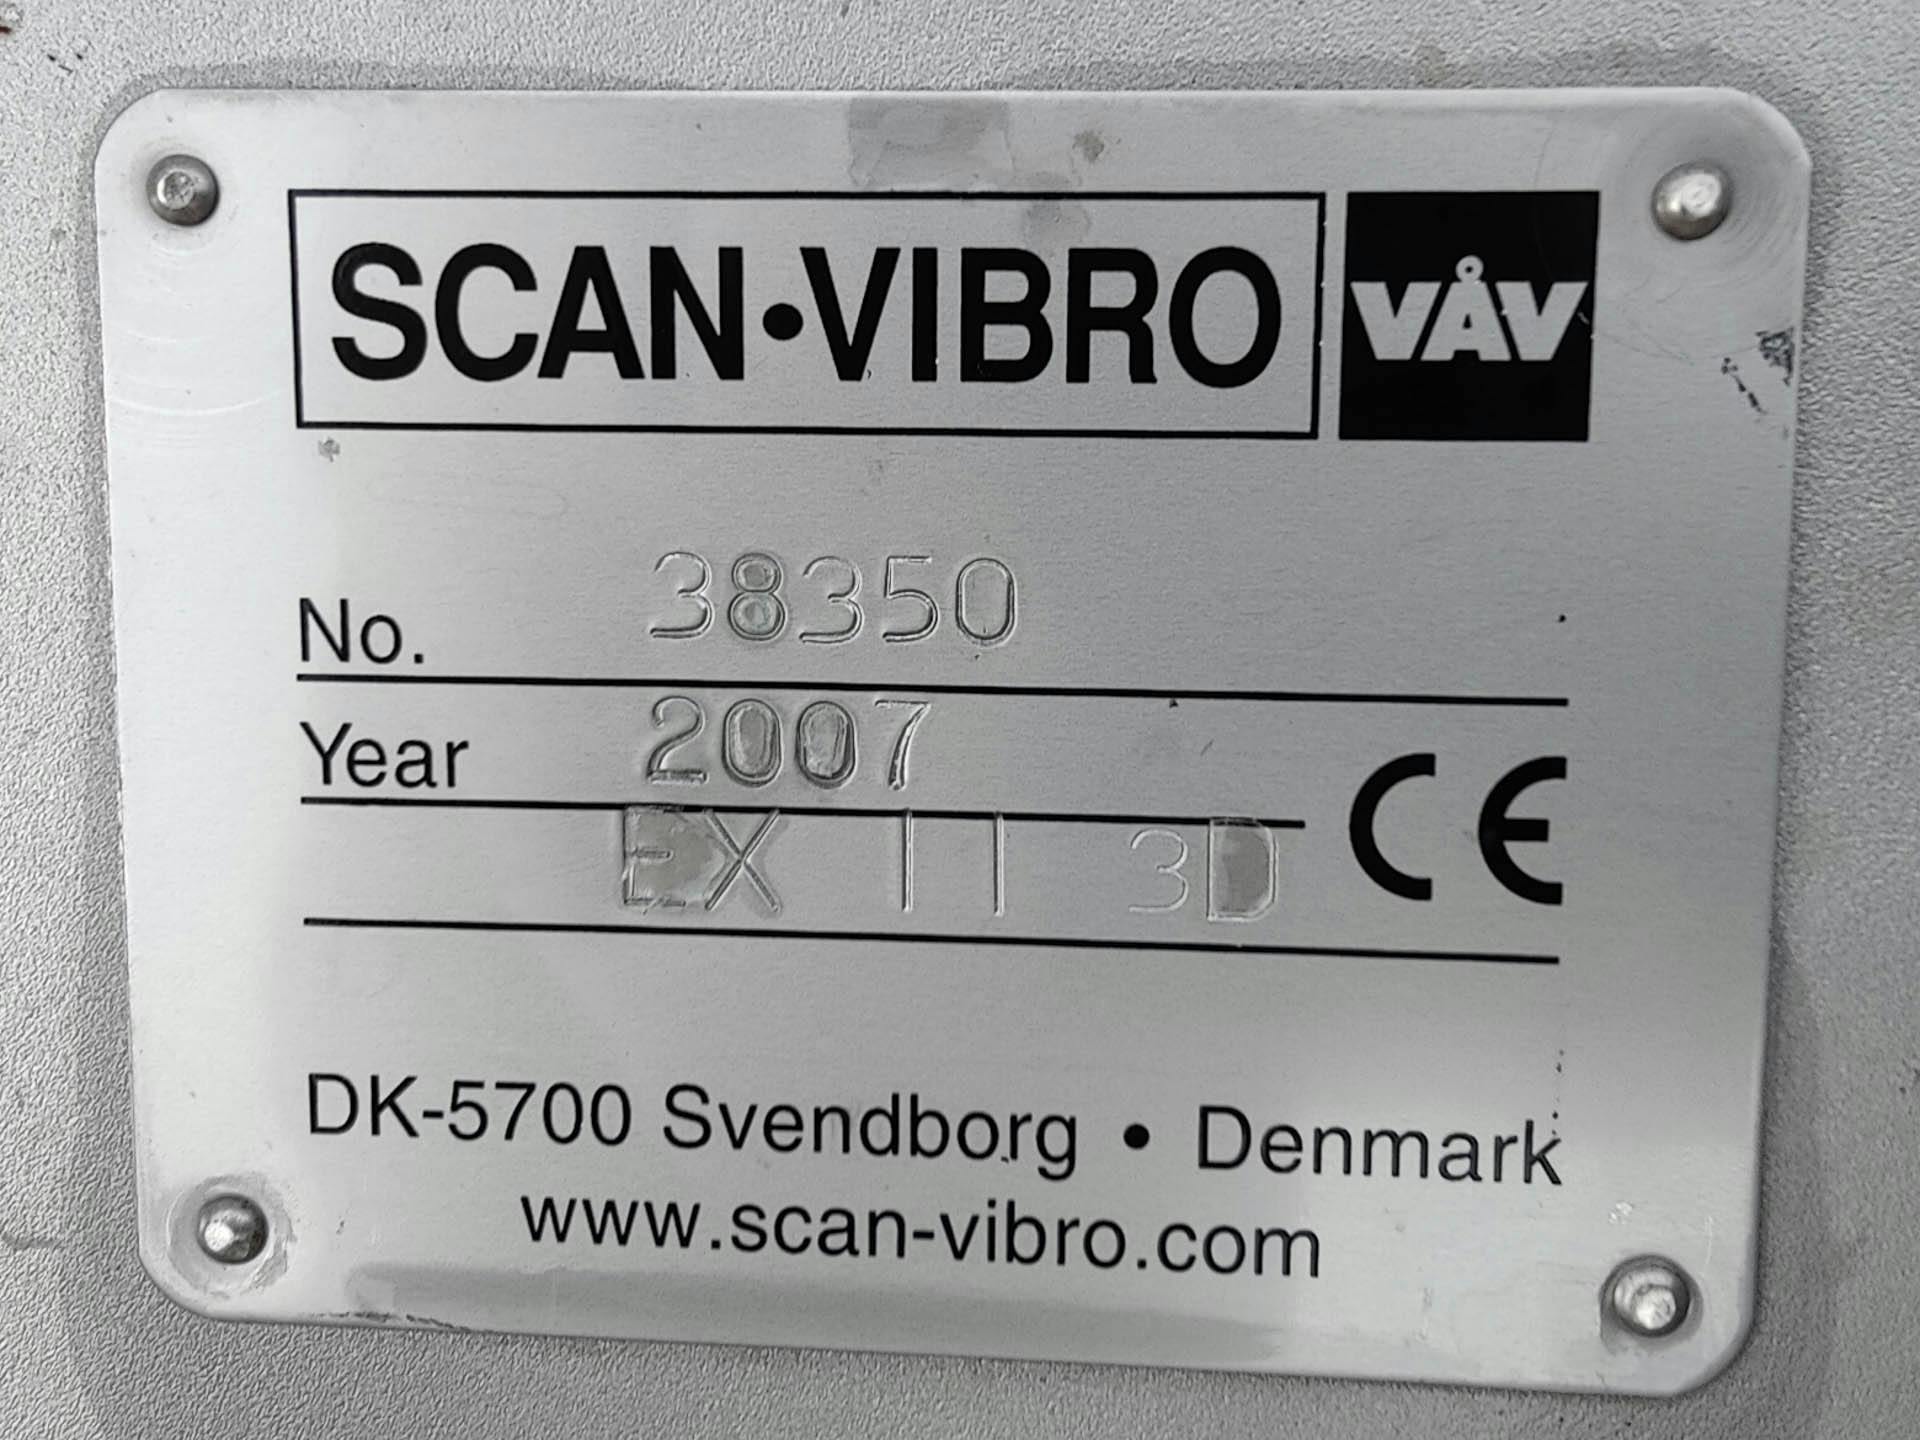 VAV Scan-Vibro - Peneira vibratória - image 12